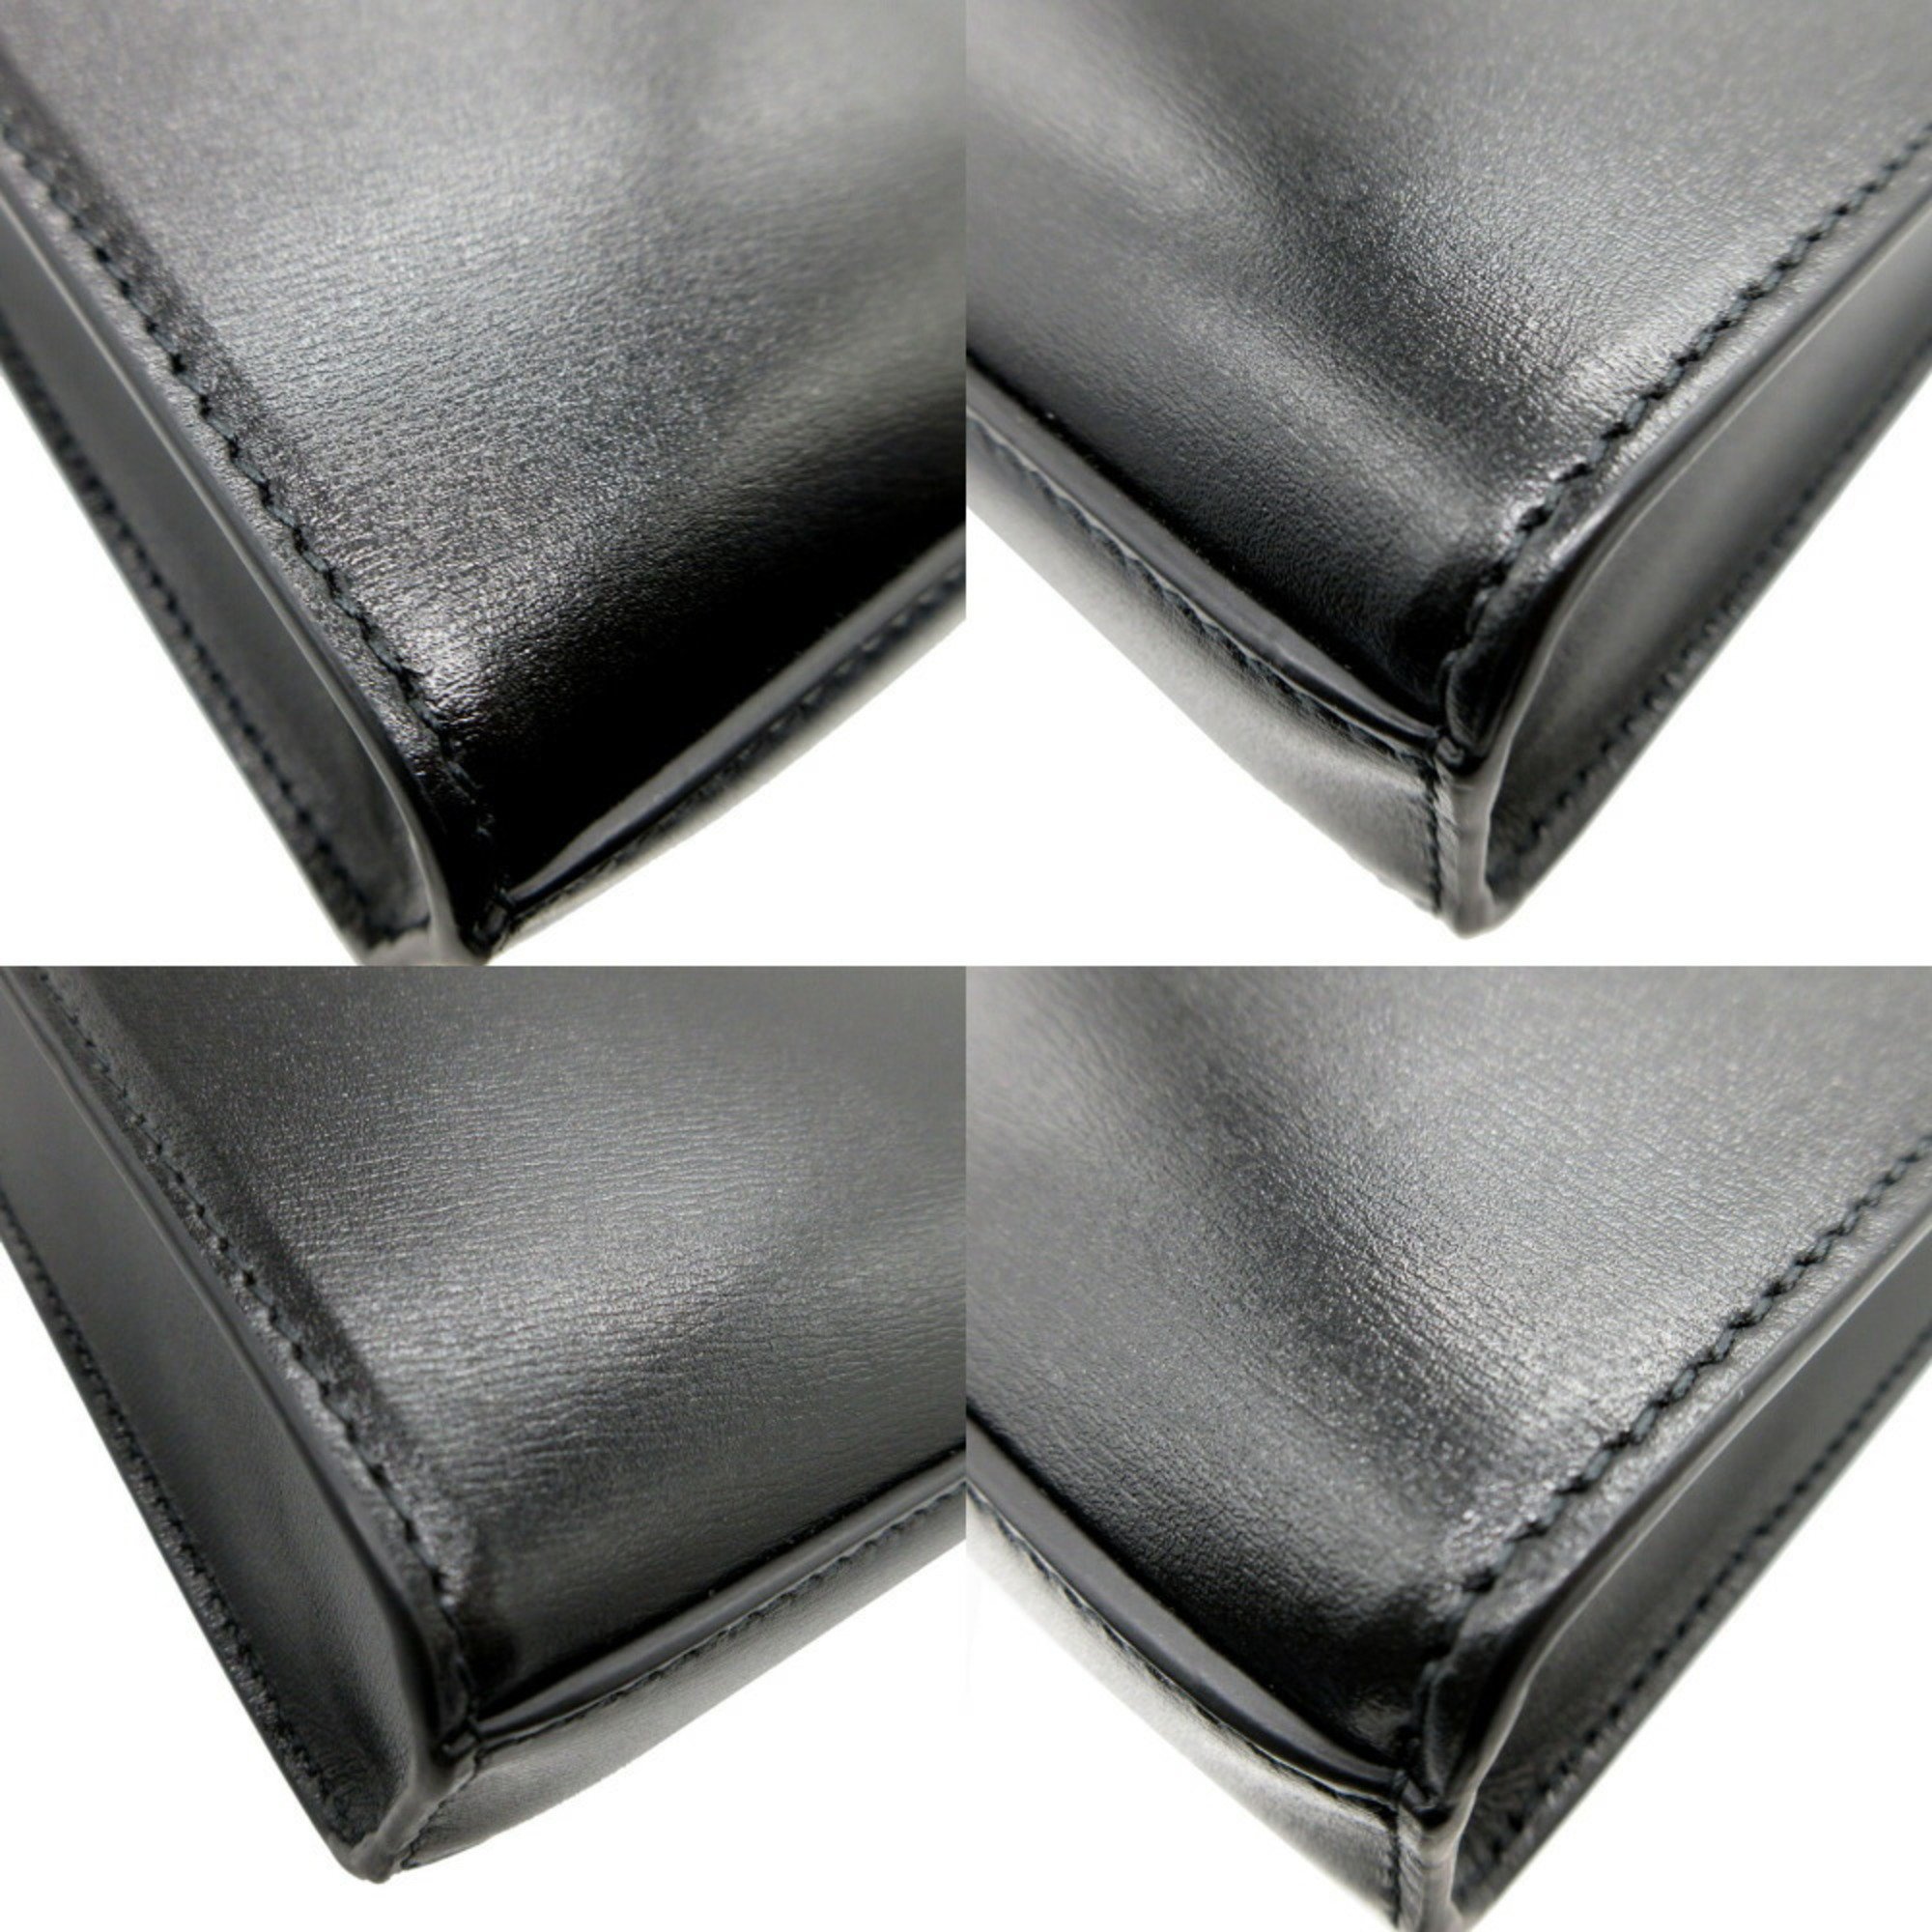 JIL SANDER Tangle Small J07WG0001 Leather Black Shoulder Bag 1107JILSANDER